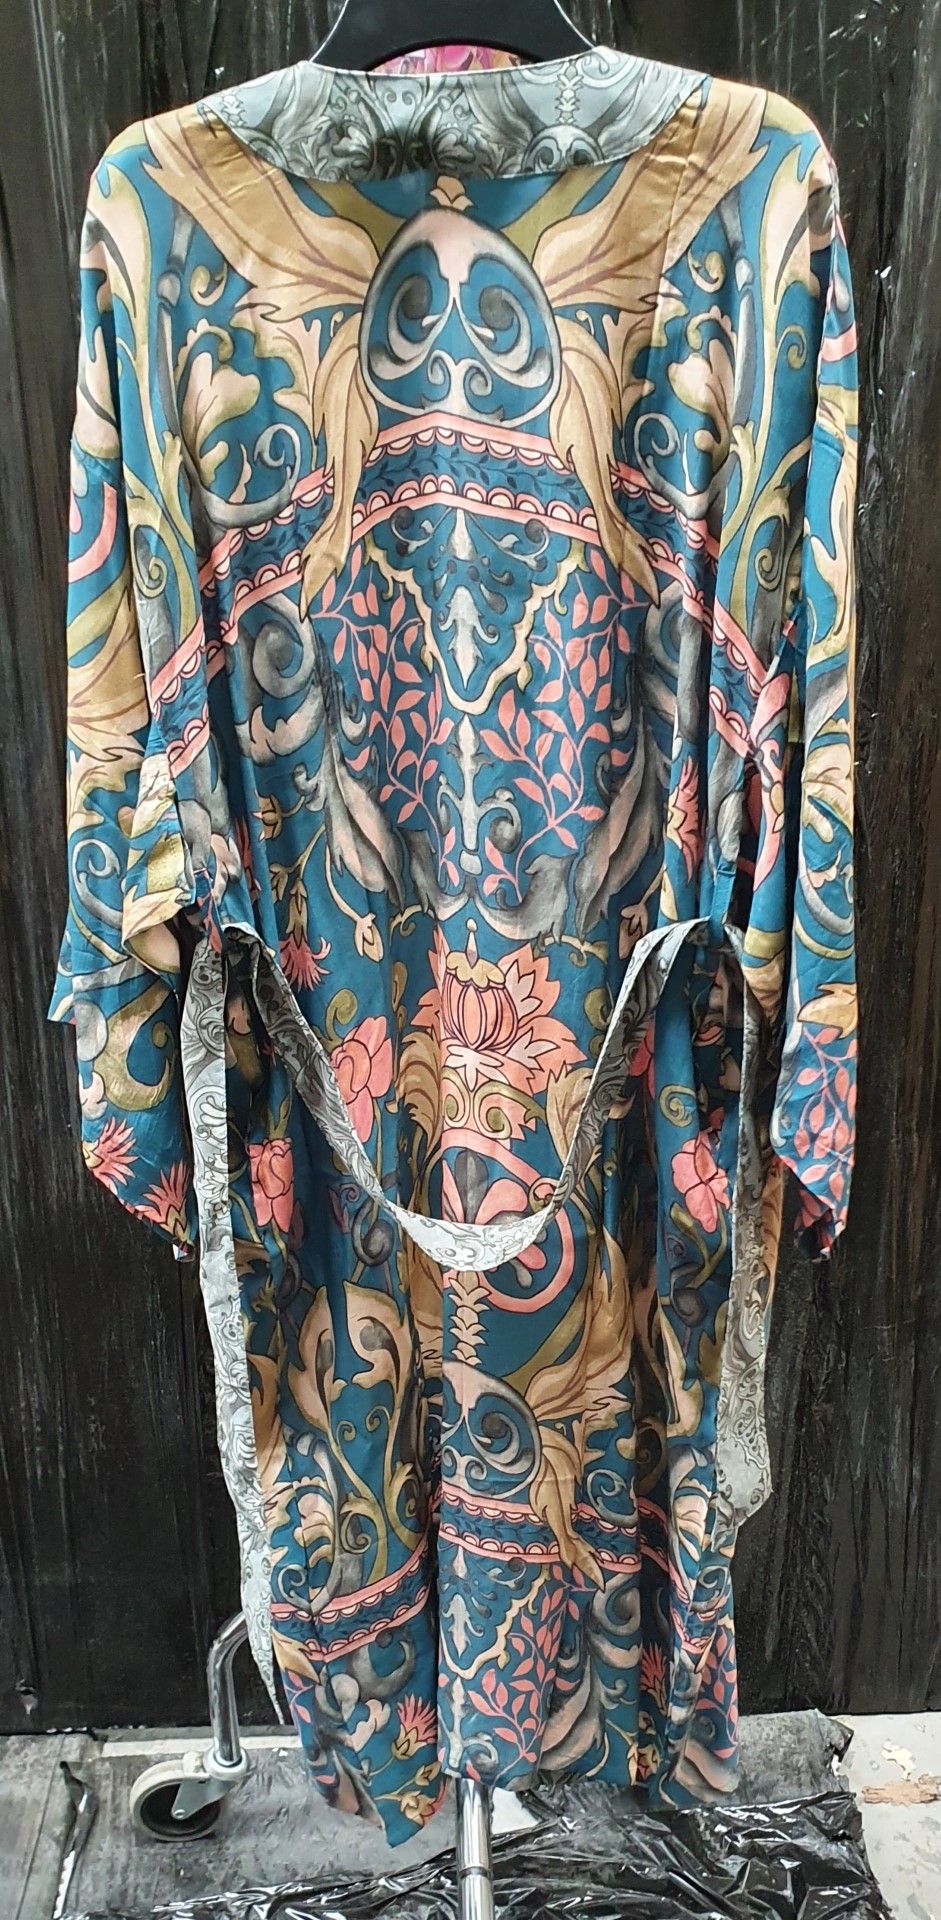 3 x Powder Kimono Style Gowns- Folk Art Petal Finish 100% Viscose Fabric - Adult One Size - New